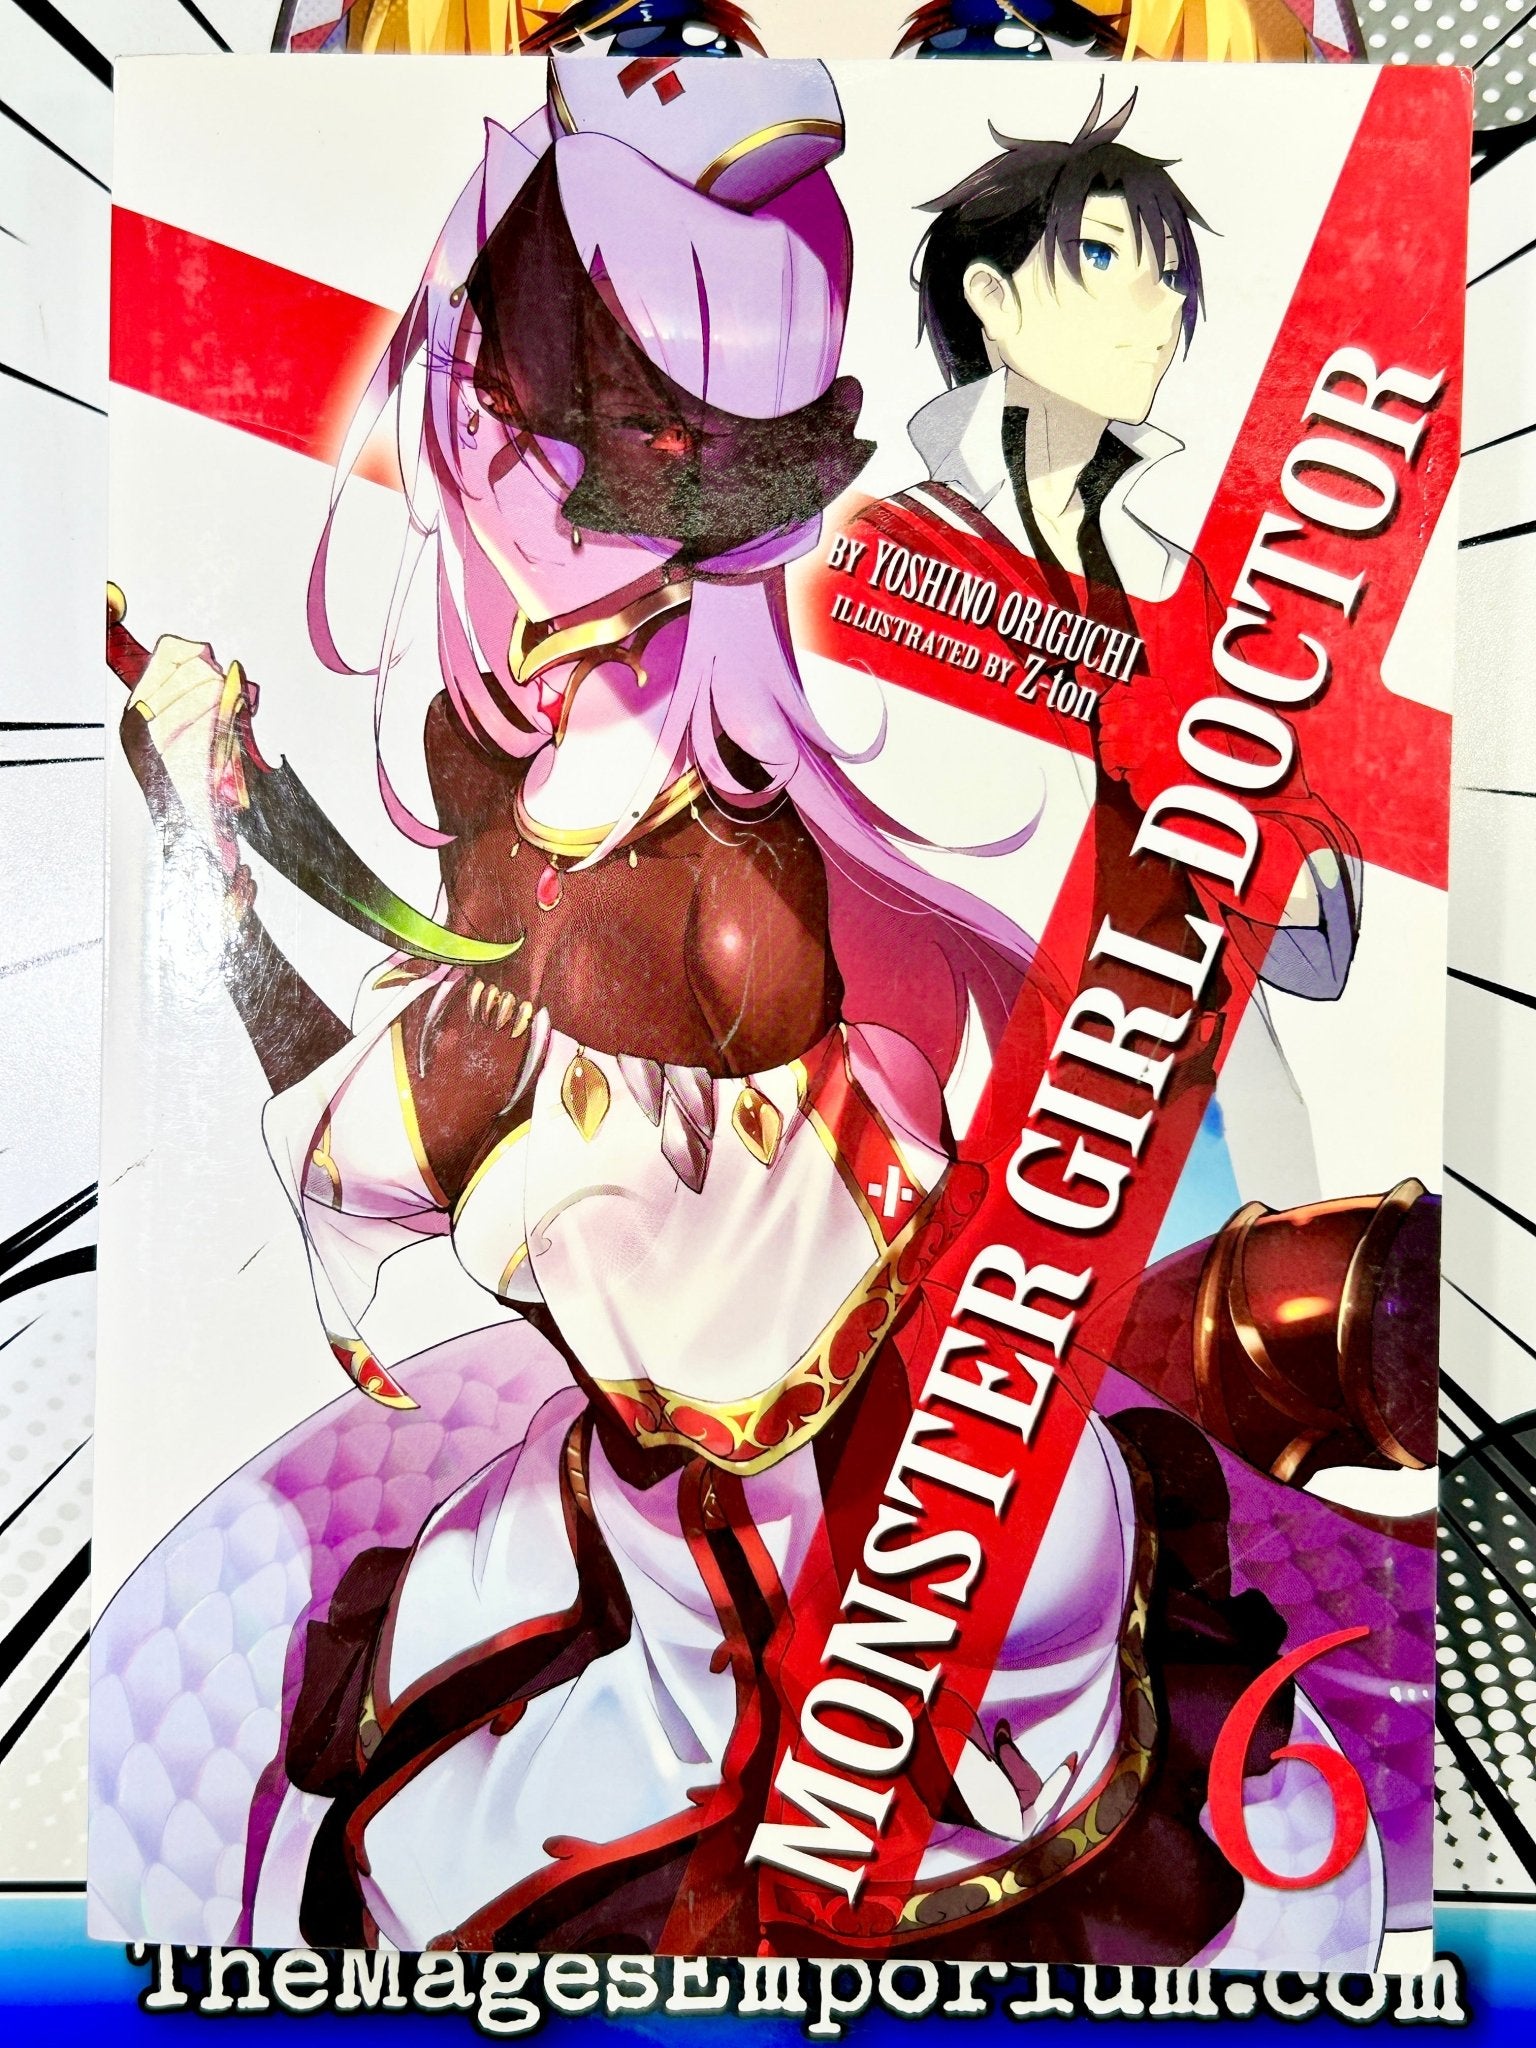 Seven Seas's Monster Girl Doctor Vol 6 Light Novel for only 5.39 at